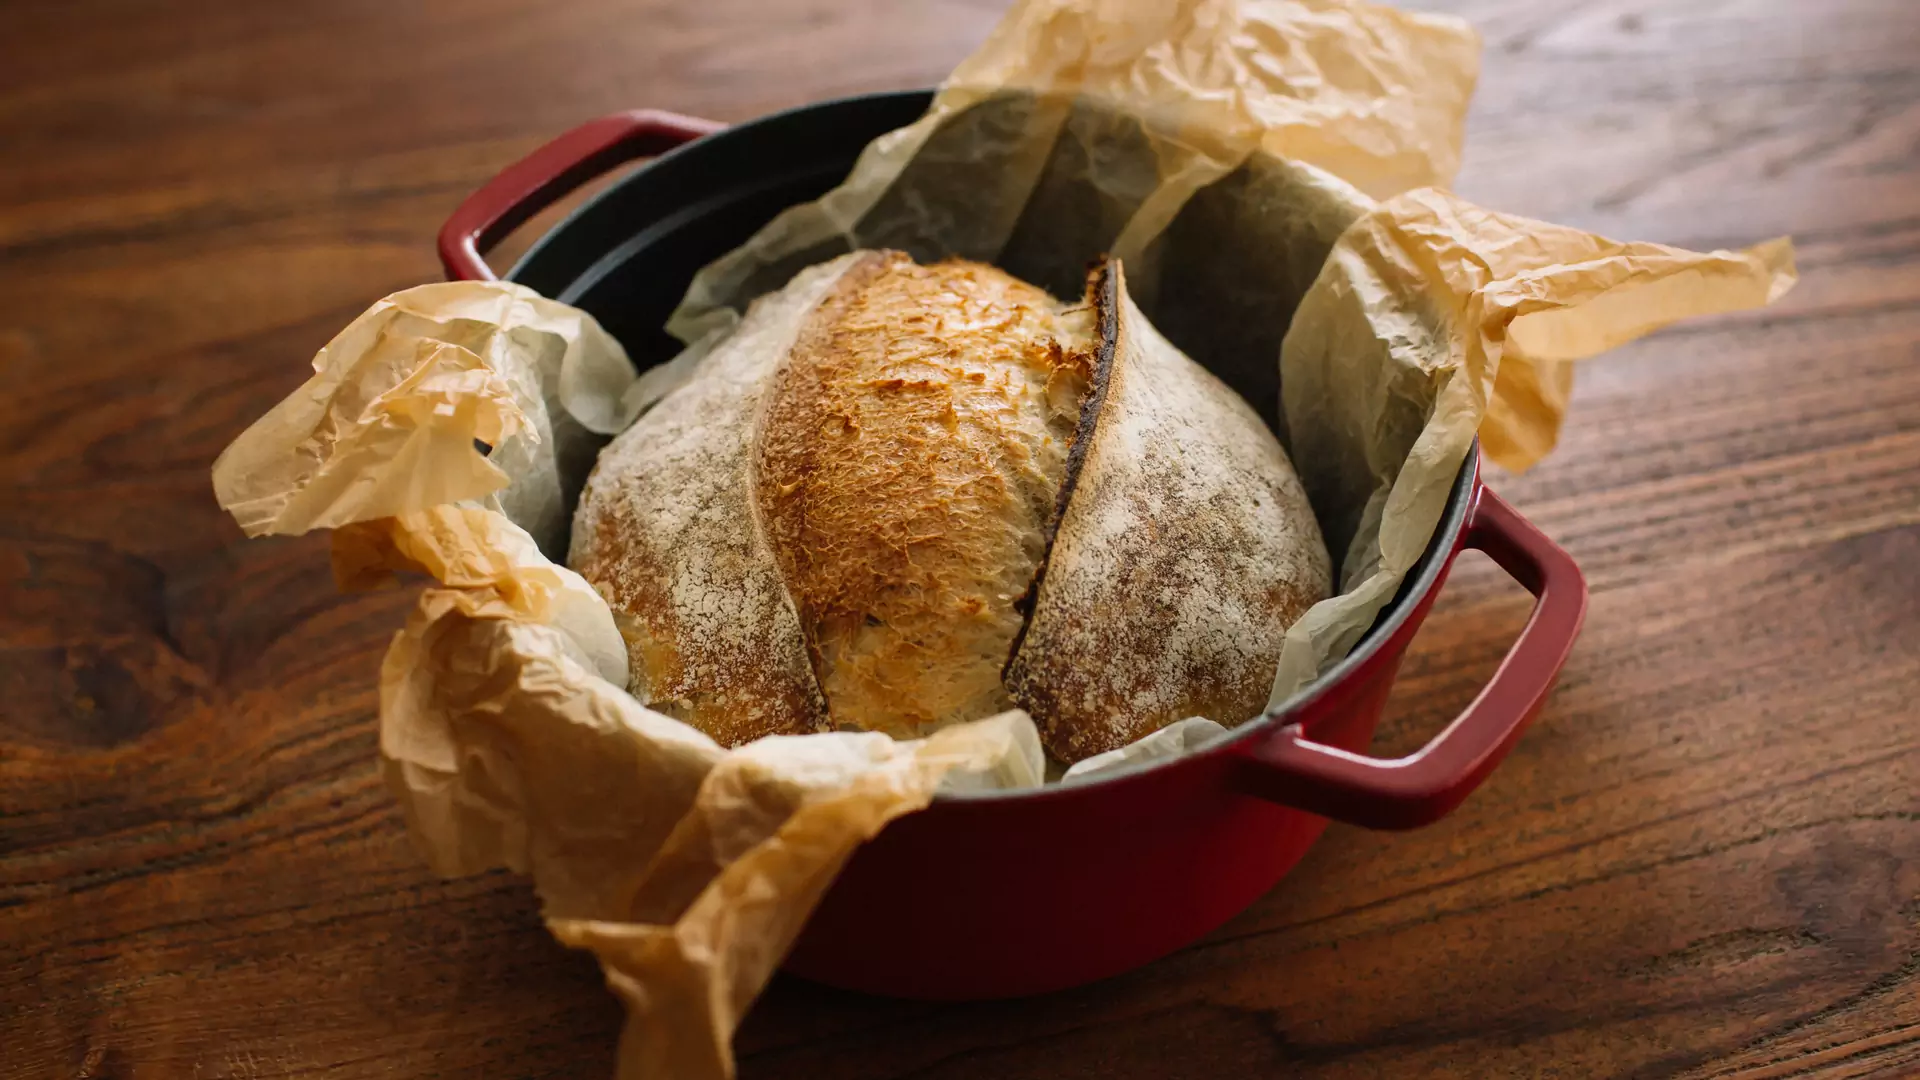 Garnek żeliwny jest idealny do domowego wypieku chleba na zakwasie